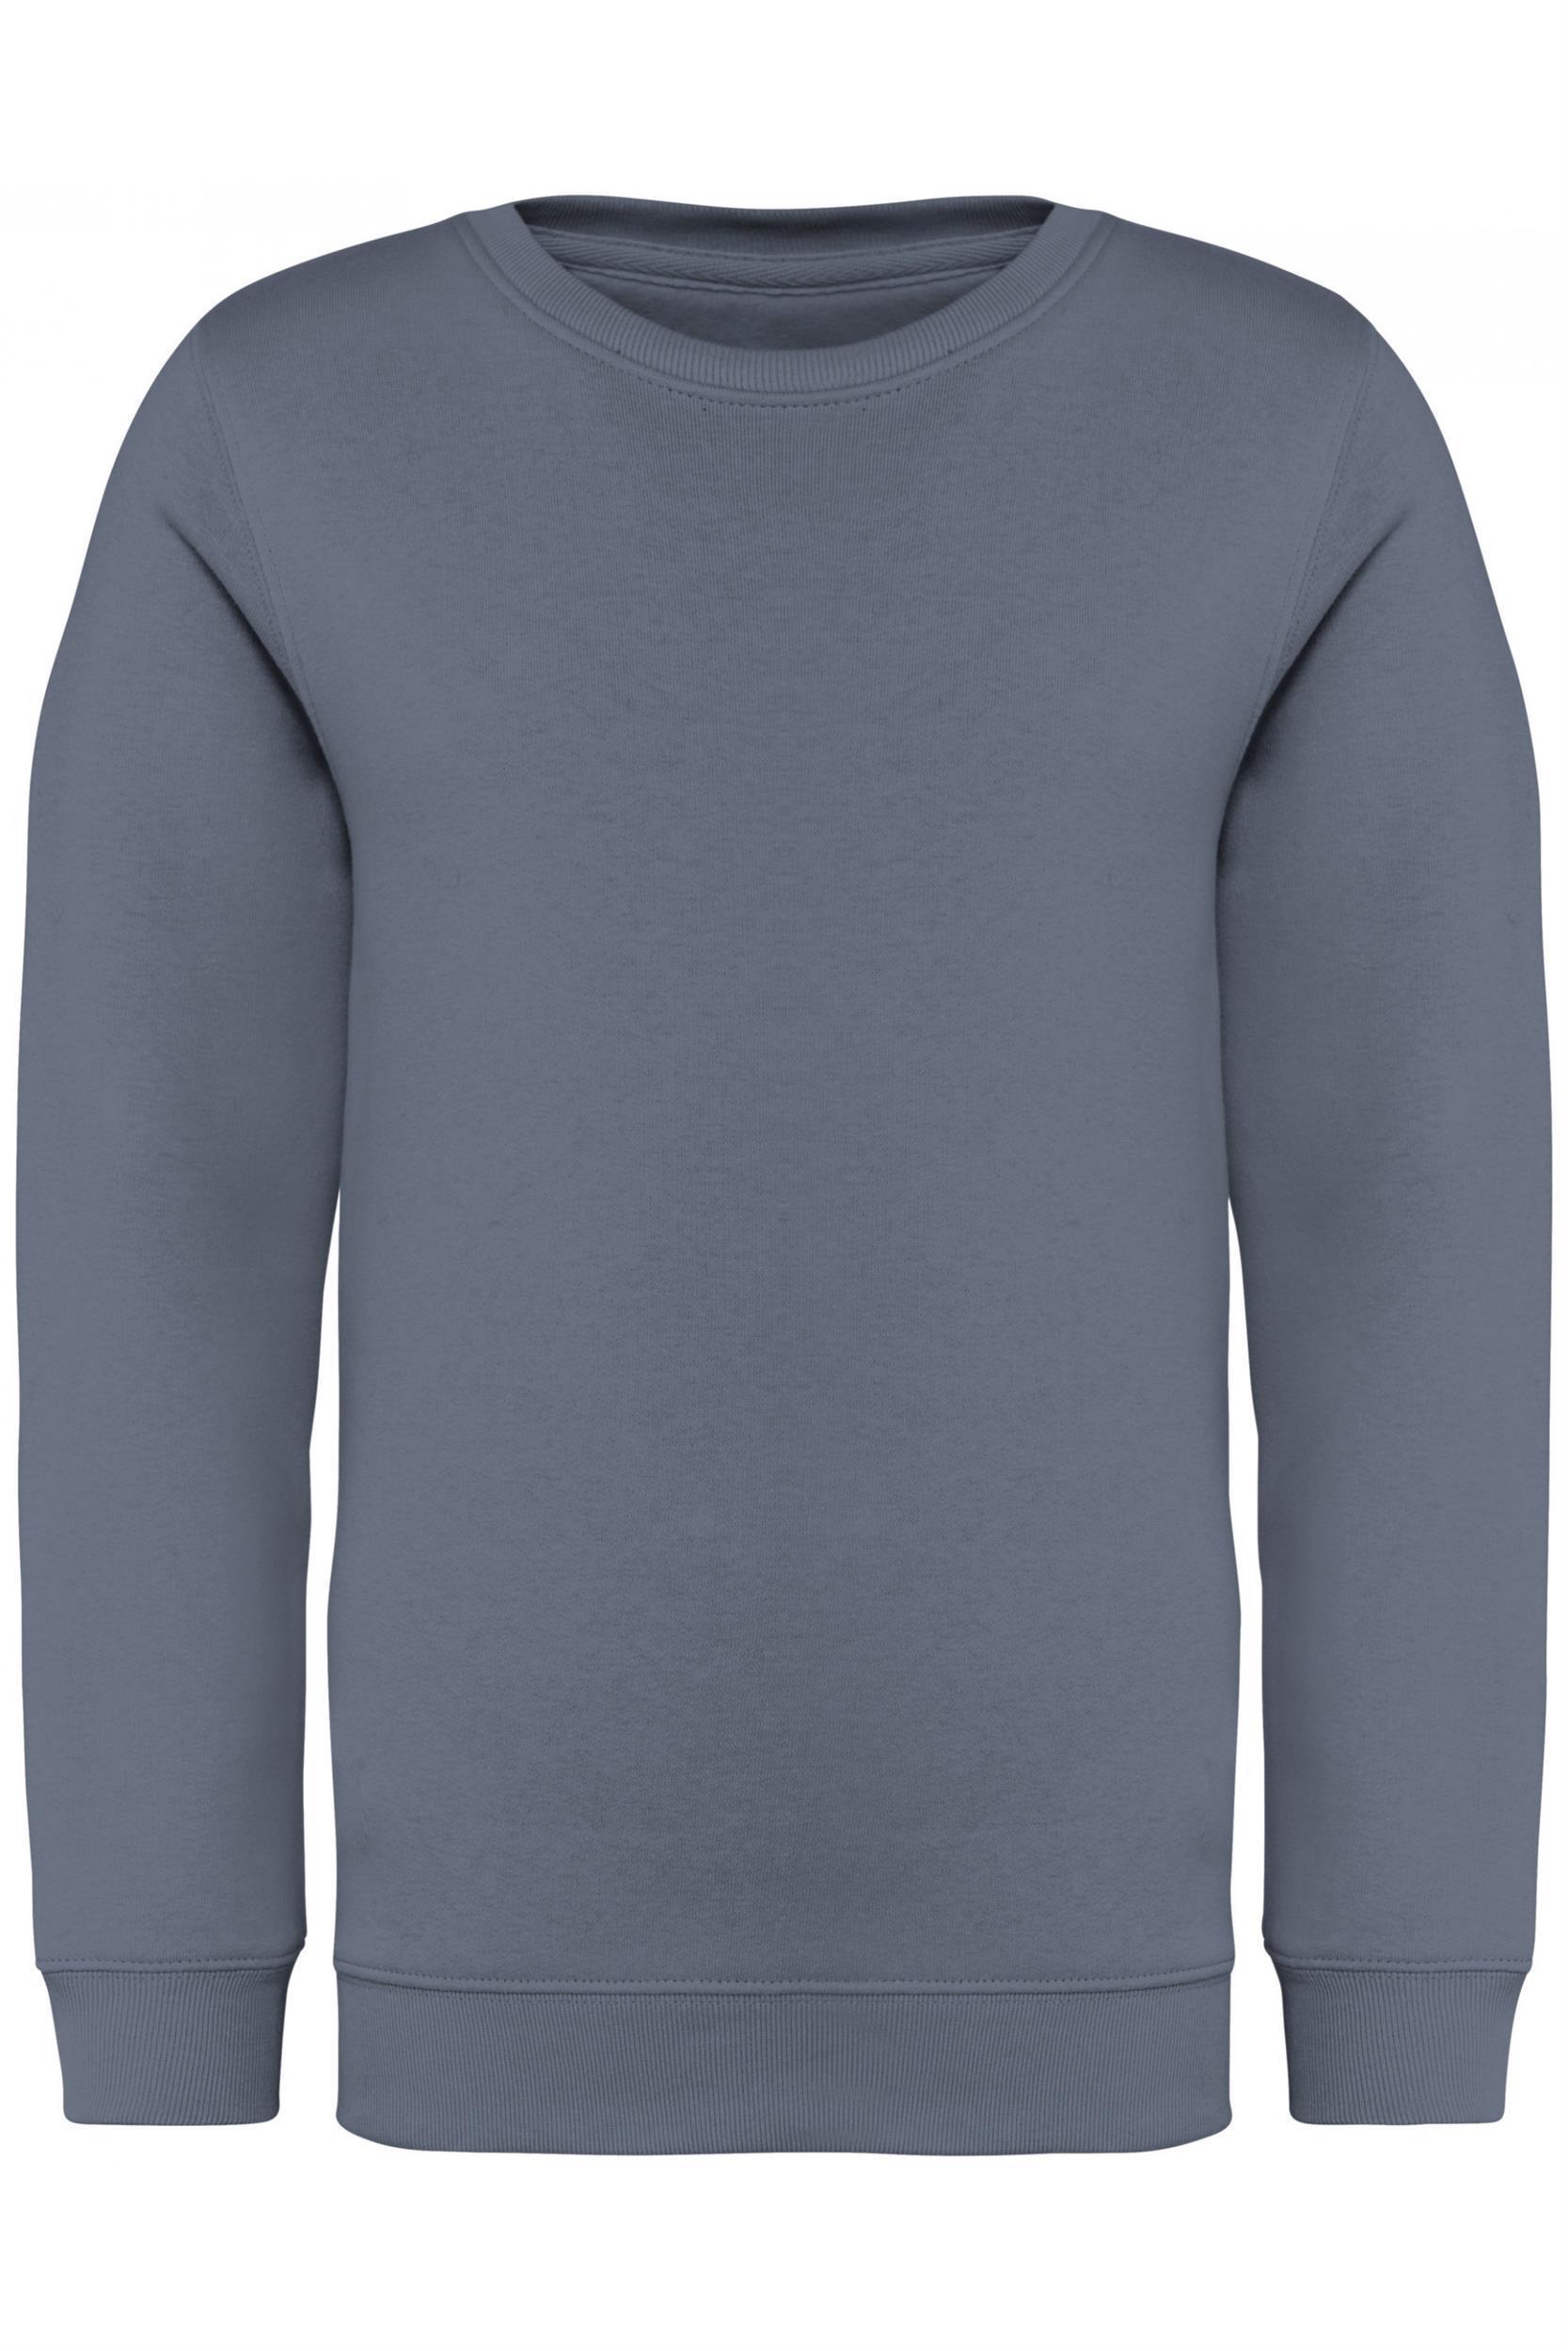 Kinder Bio-Baumwoll-Sweatshirt 350 g/m² Native Spirit® Mineral Grey 8/10 Jahre